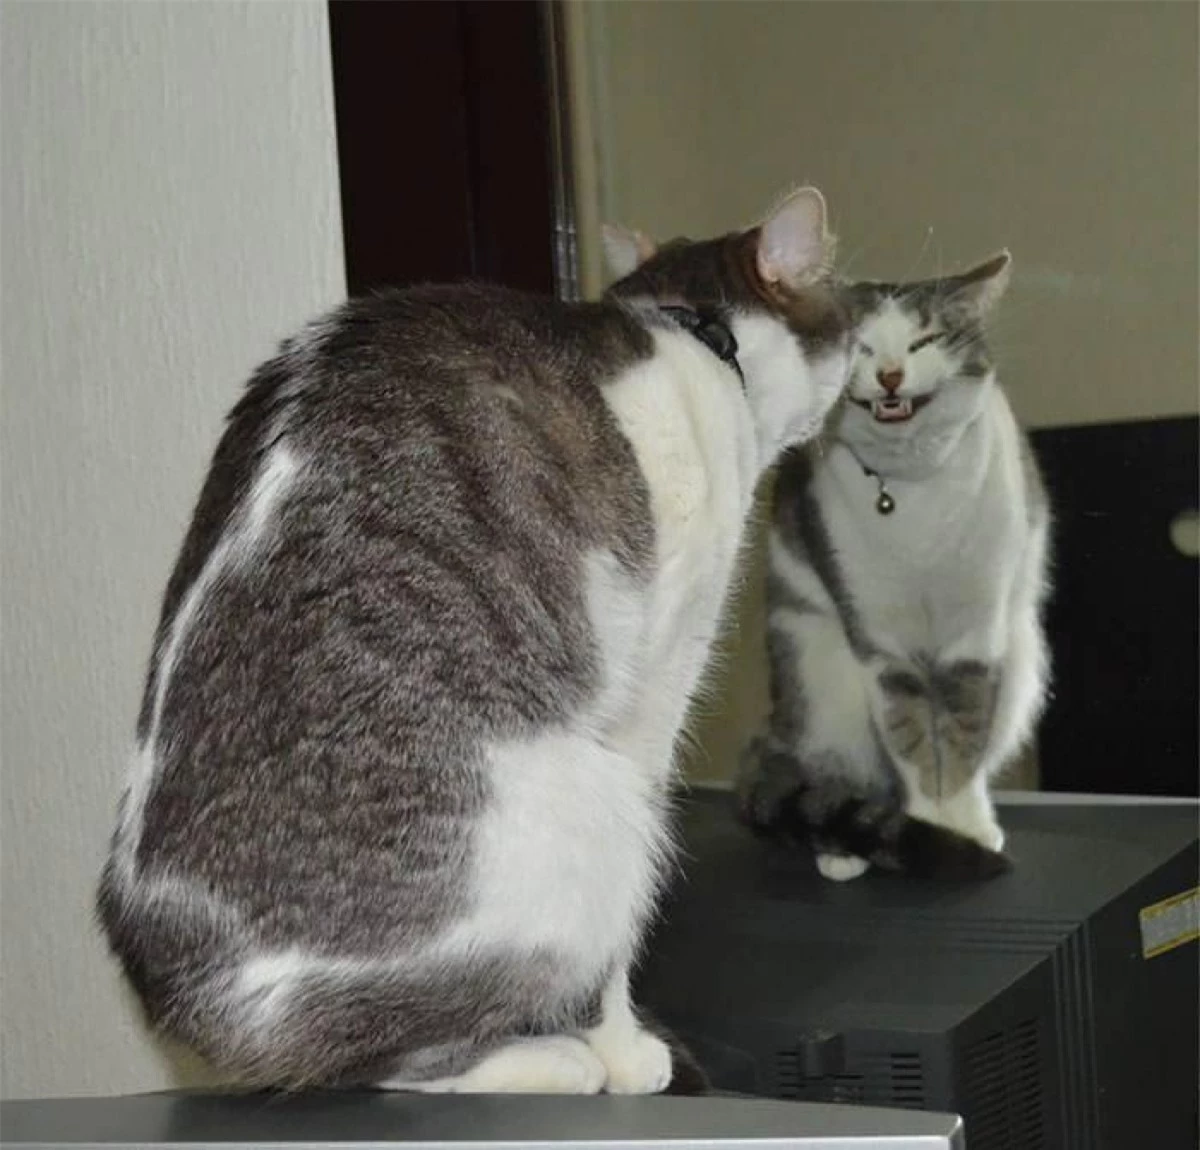 Khoảnh khắc hài hước khi chú mèo tạo dáng trước gương với nụ cười kỳ quái.